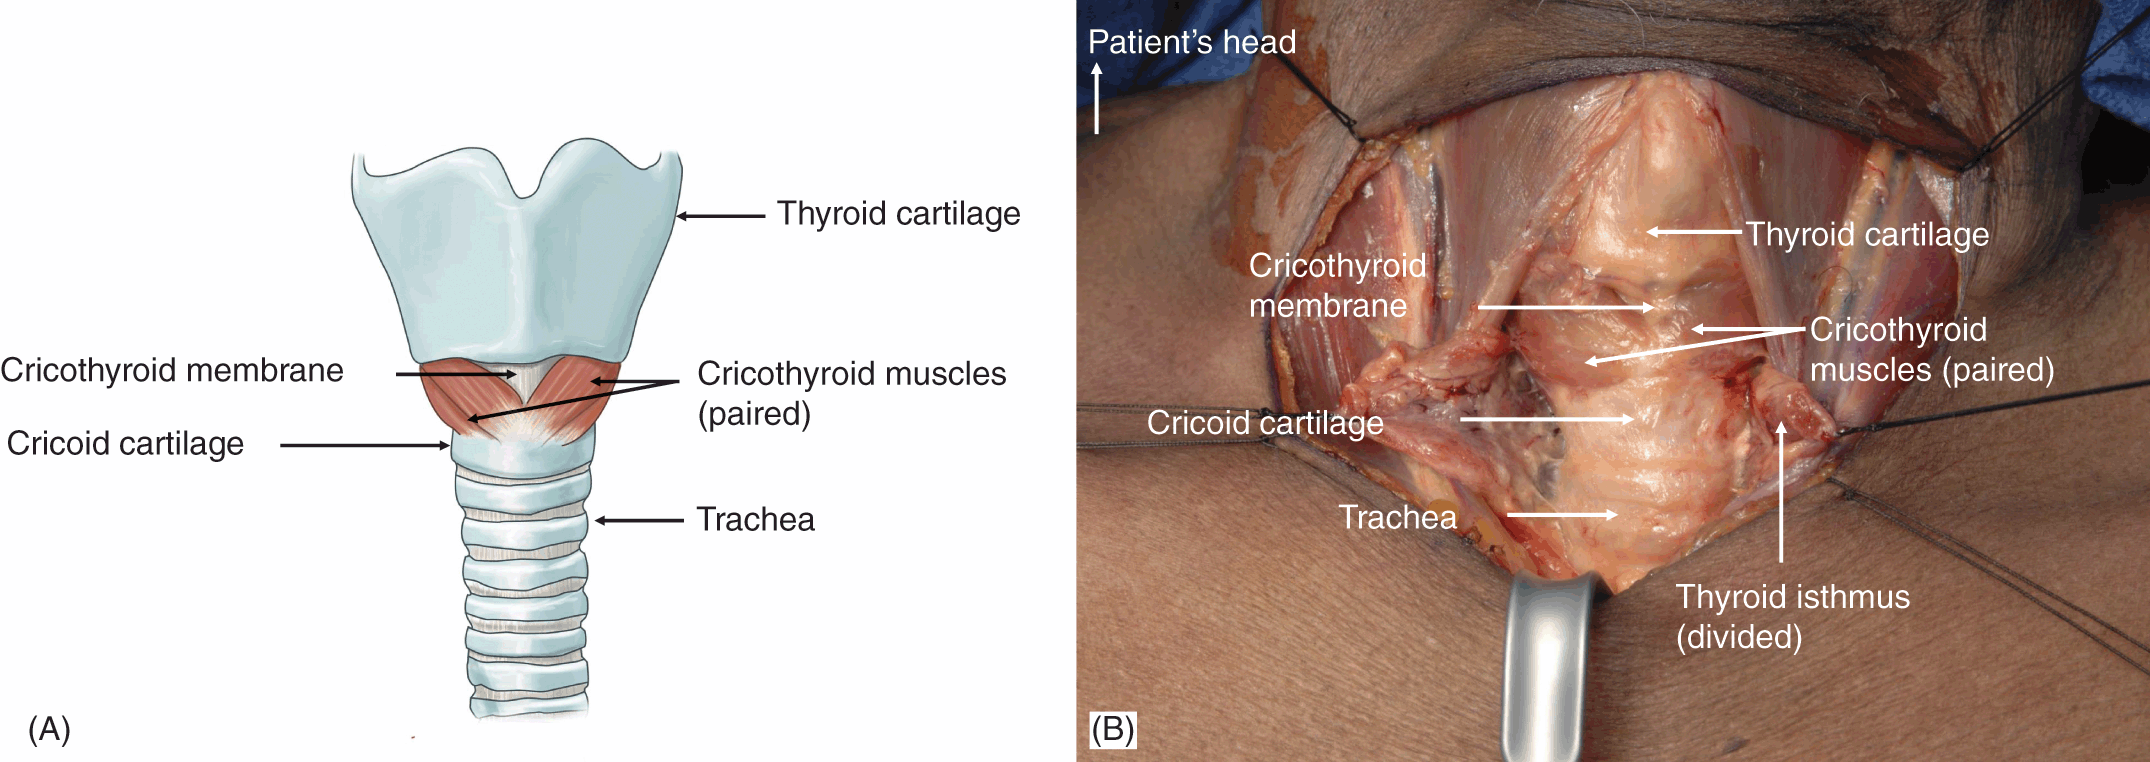 tracheostomy vs cricothyrotomy